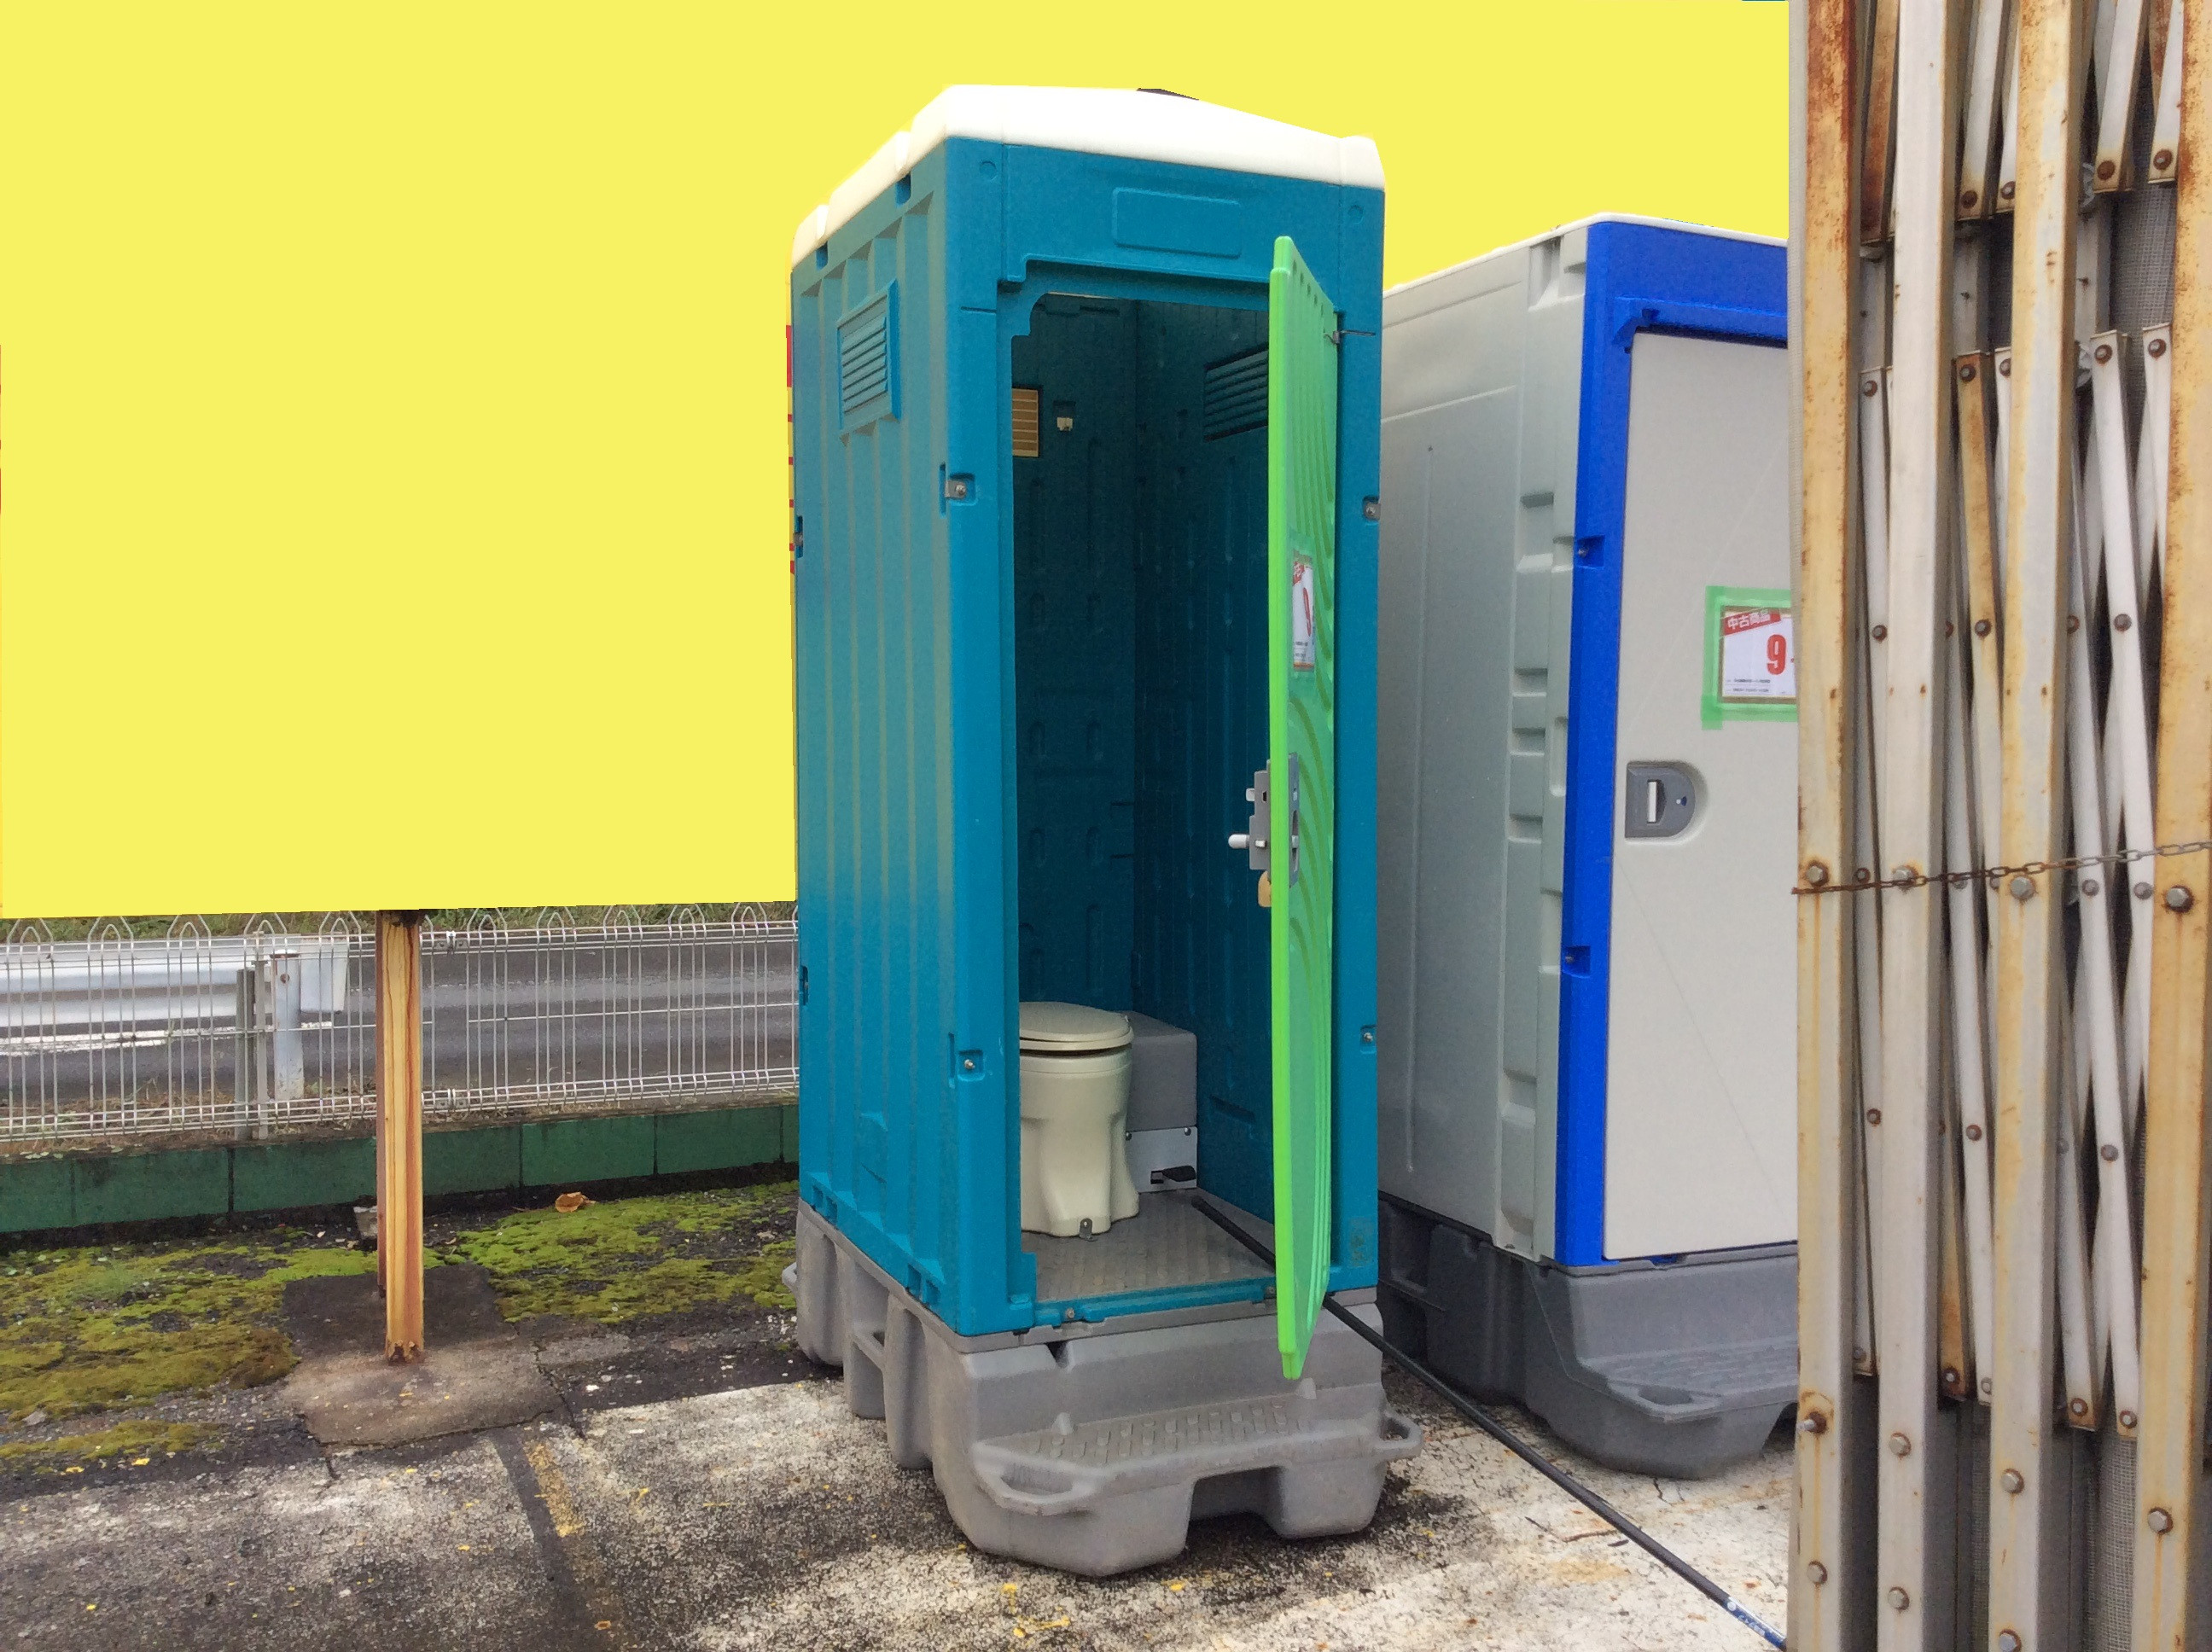 仮設トイレ()沖縄県うるま市 - 沖縄県の家電